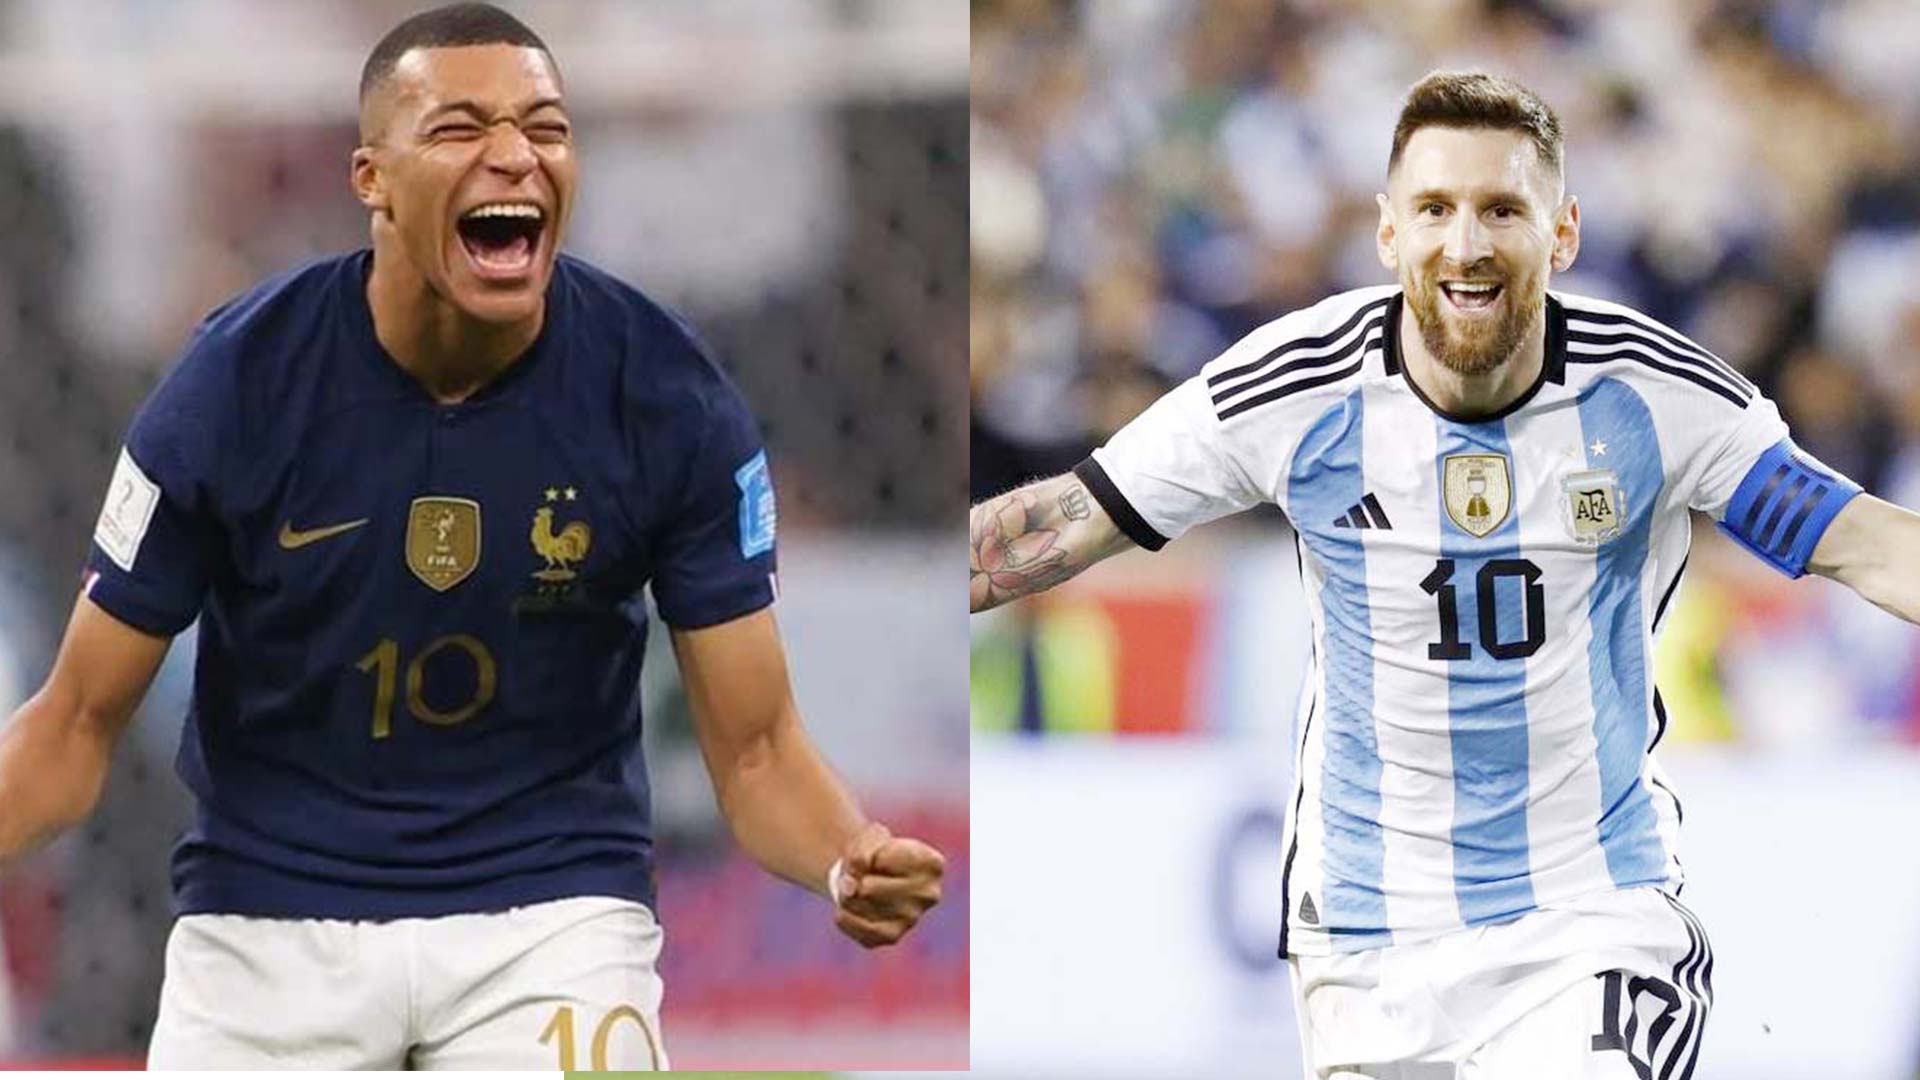 Được cả thế giới mong chờ, Messi và Mbappe đã đồng hành cùng nhau trong một bức tranh phiên bản đặc biệt. Mỗi chi tiết trên bức tranh đều được thể hiện bằng nét vẽ tinh tế và sắc nét, tạo nên một bức tranh hoàn hảo. Hãy cùng nhau khám phá sự kết hợp tuyệt vời giữa hai siêu sao bóng đá trên bức tranh này.